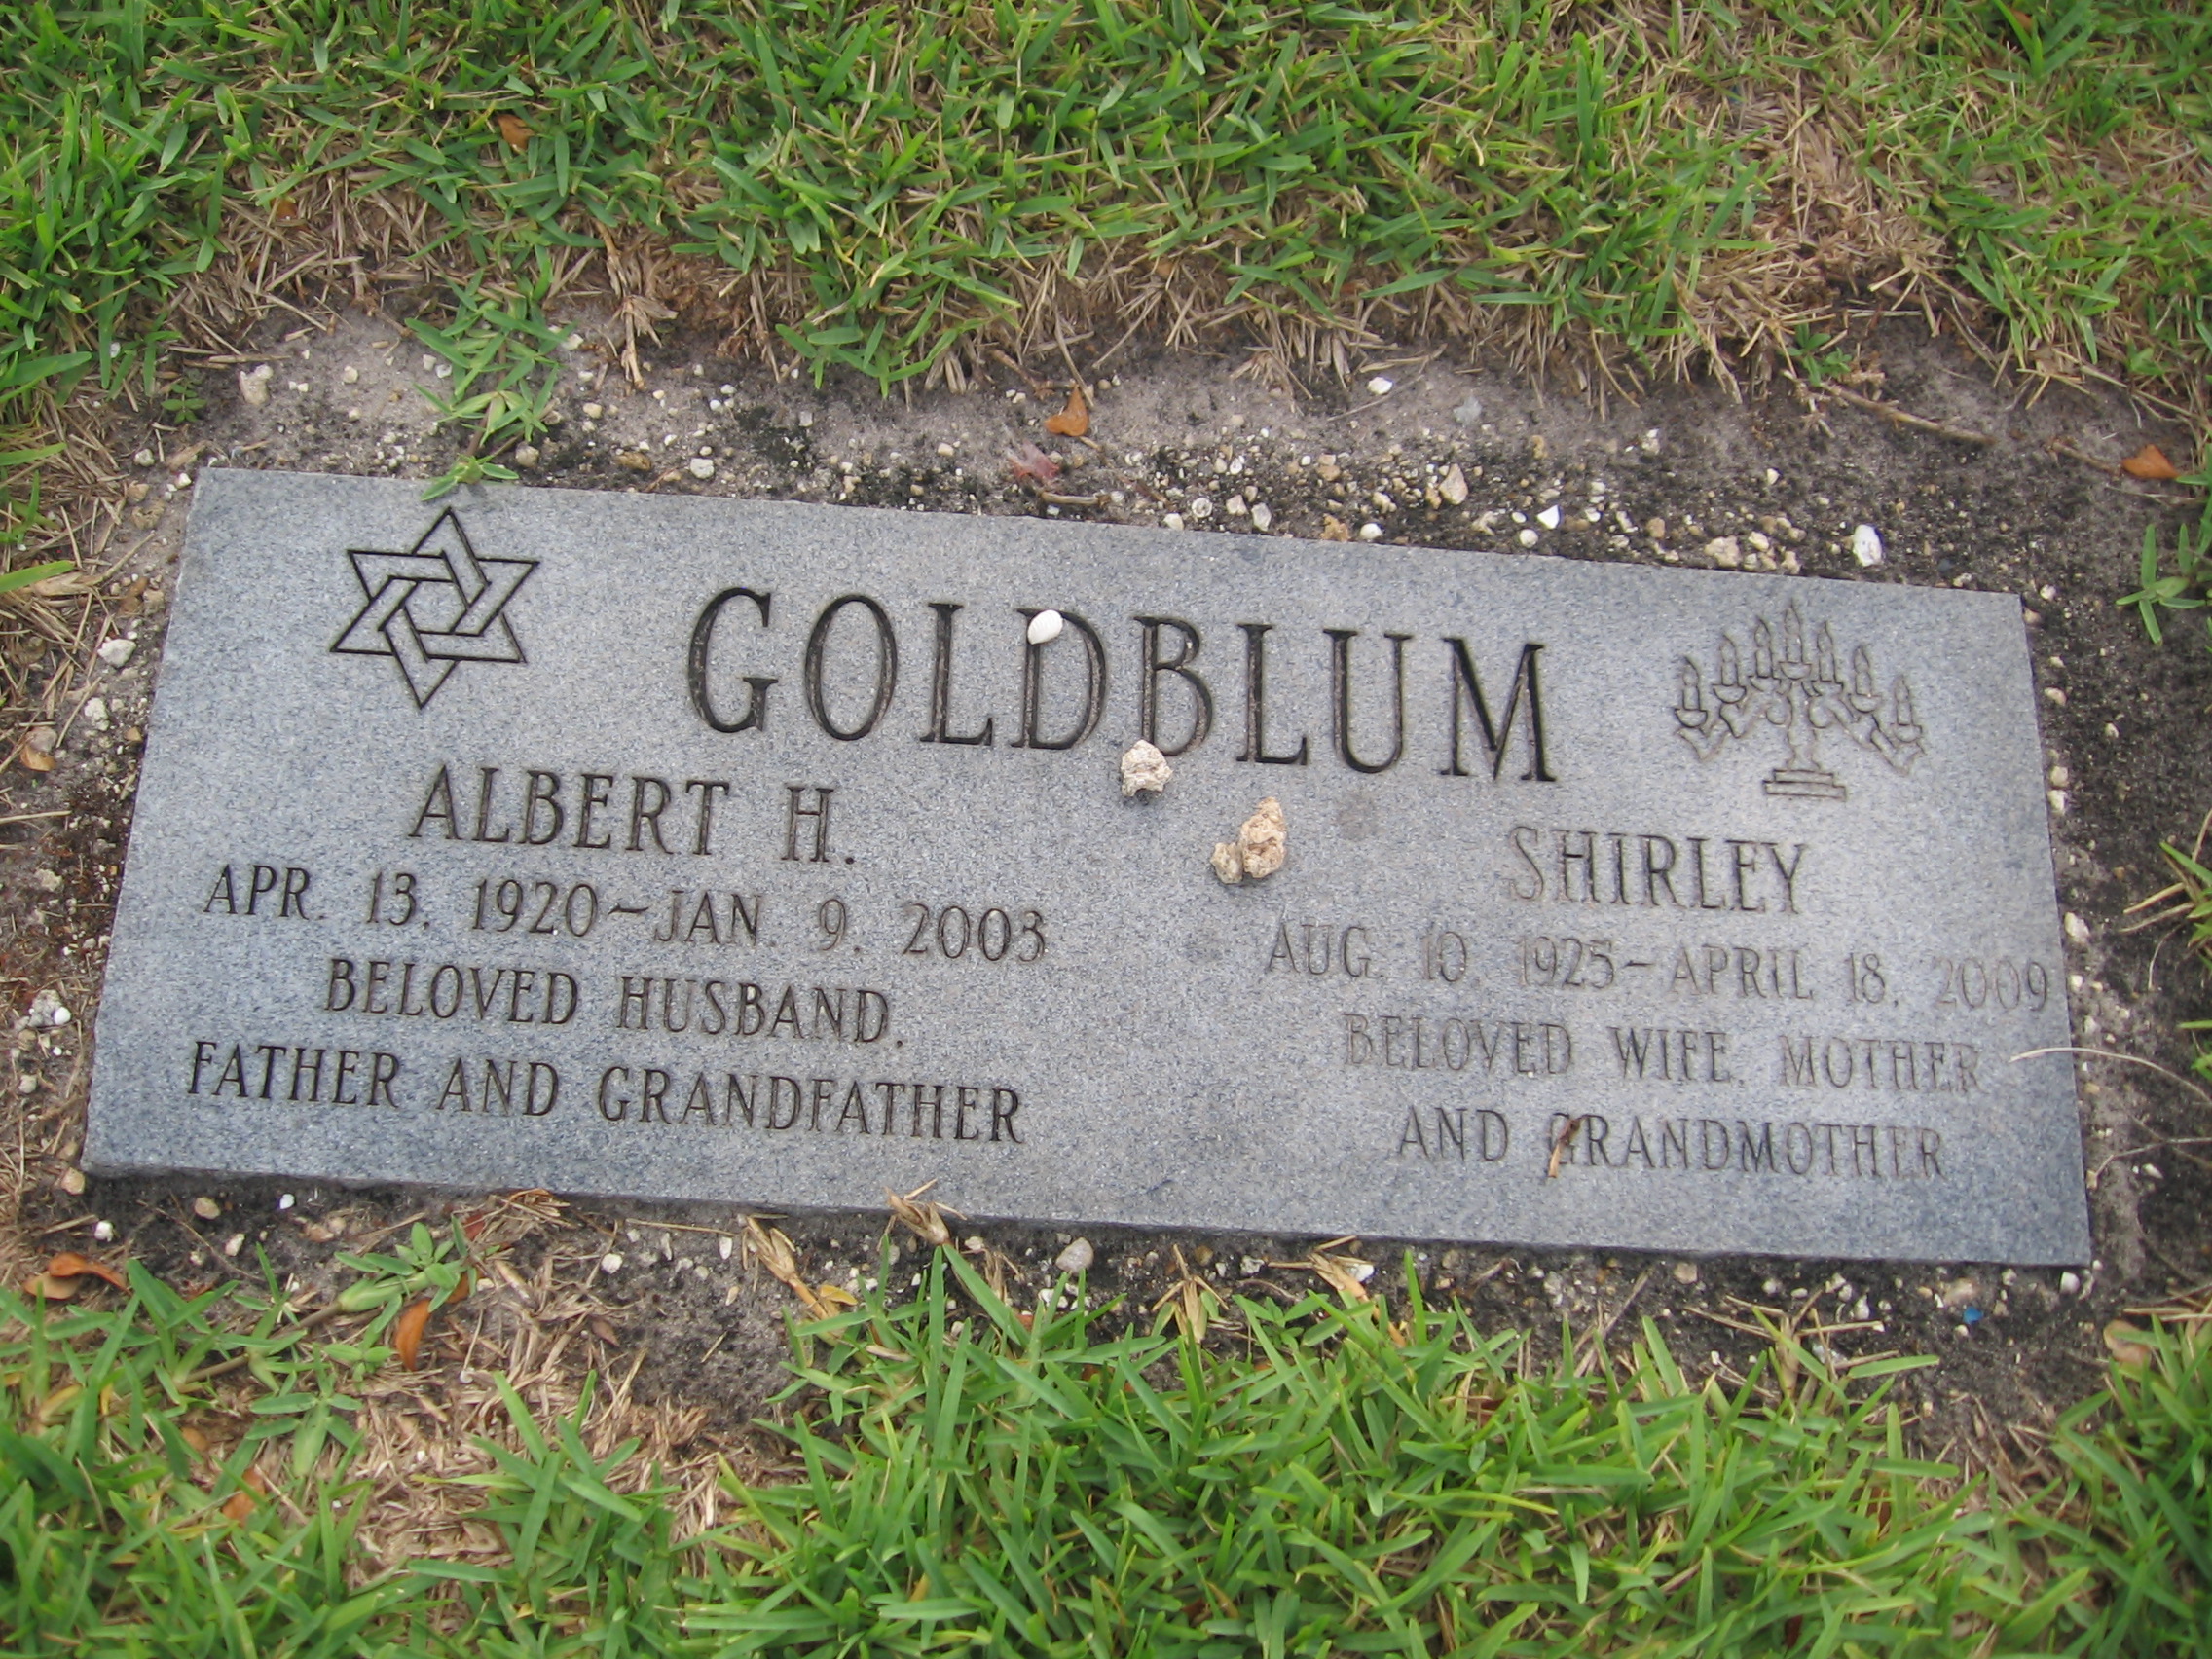 Albert H Goldblum